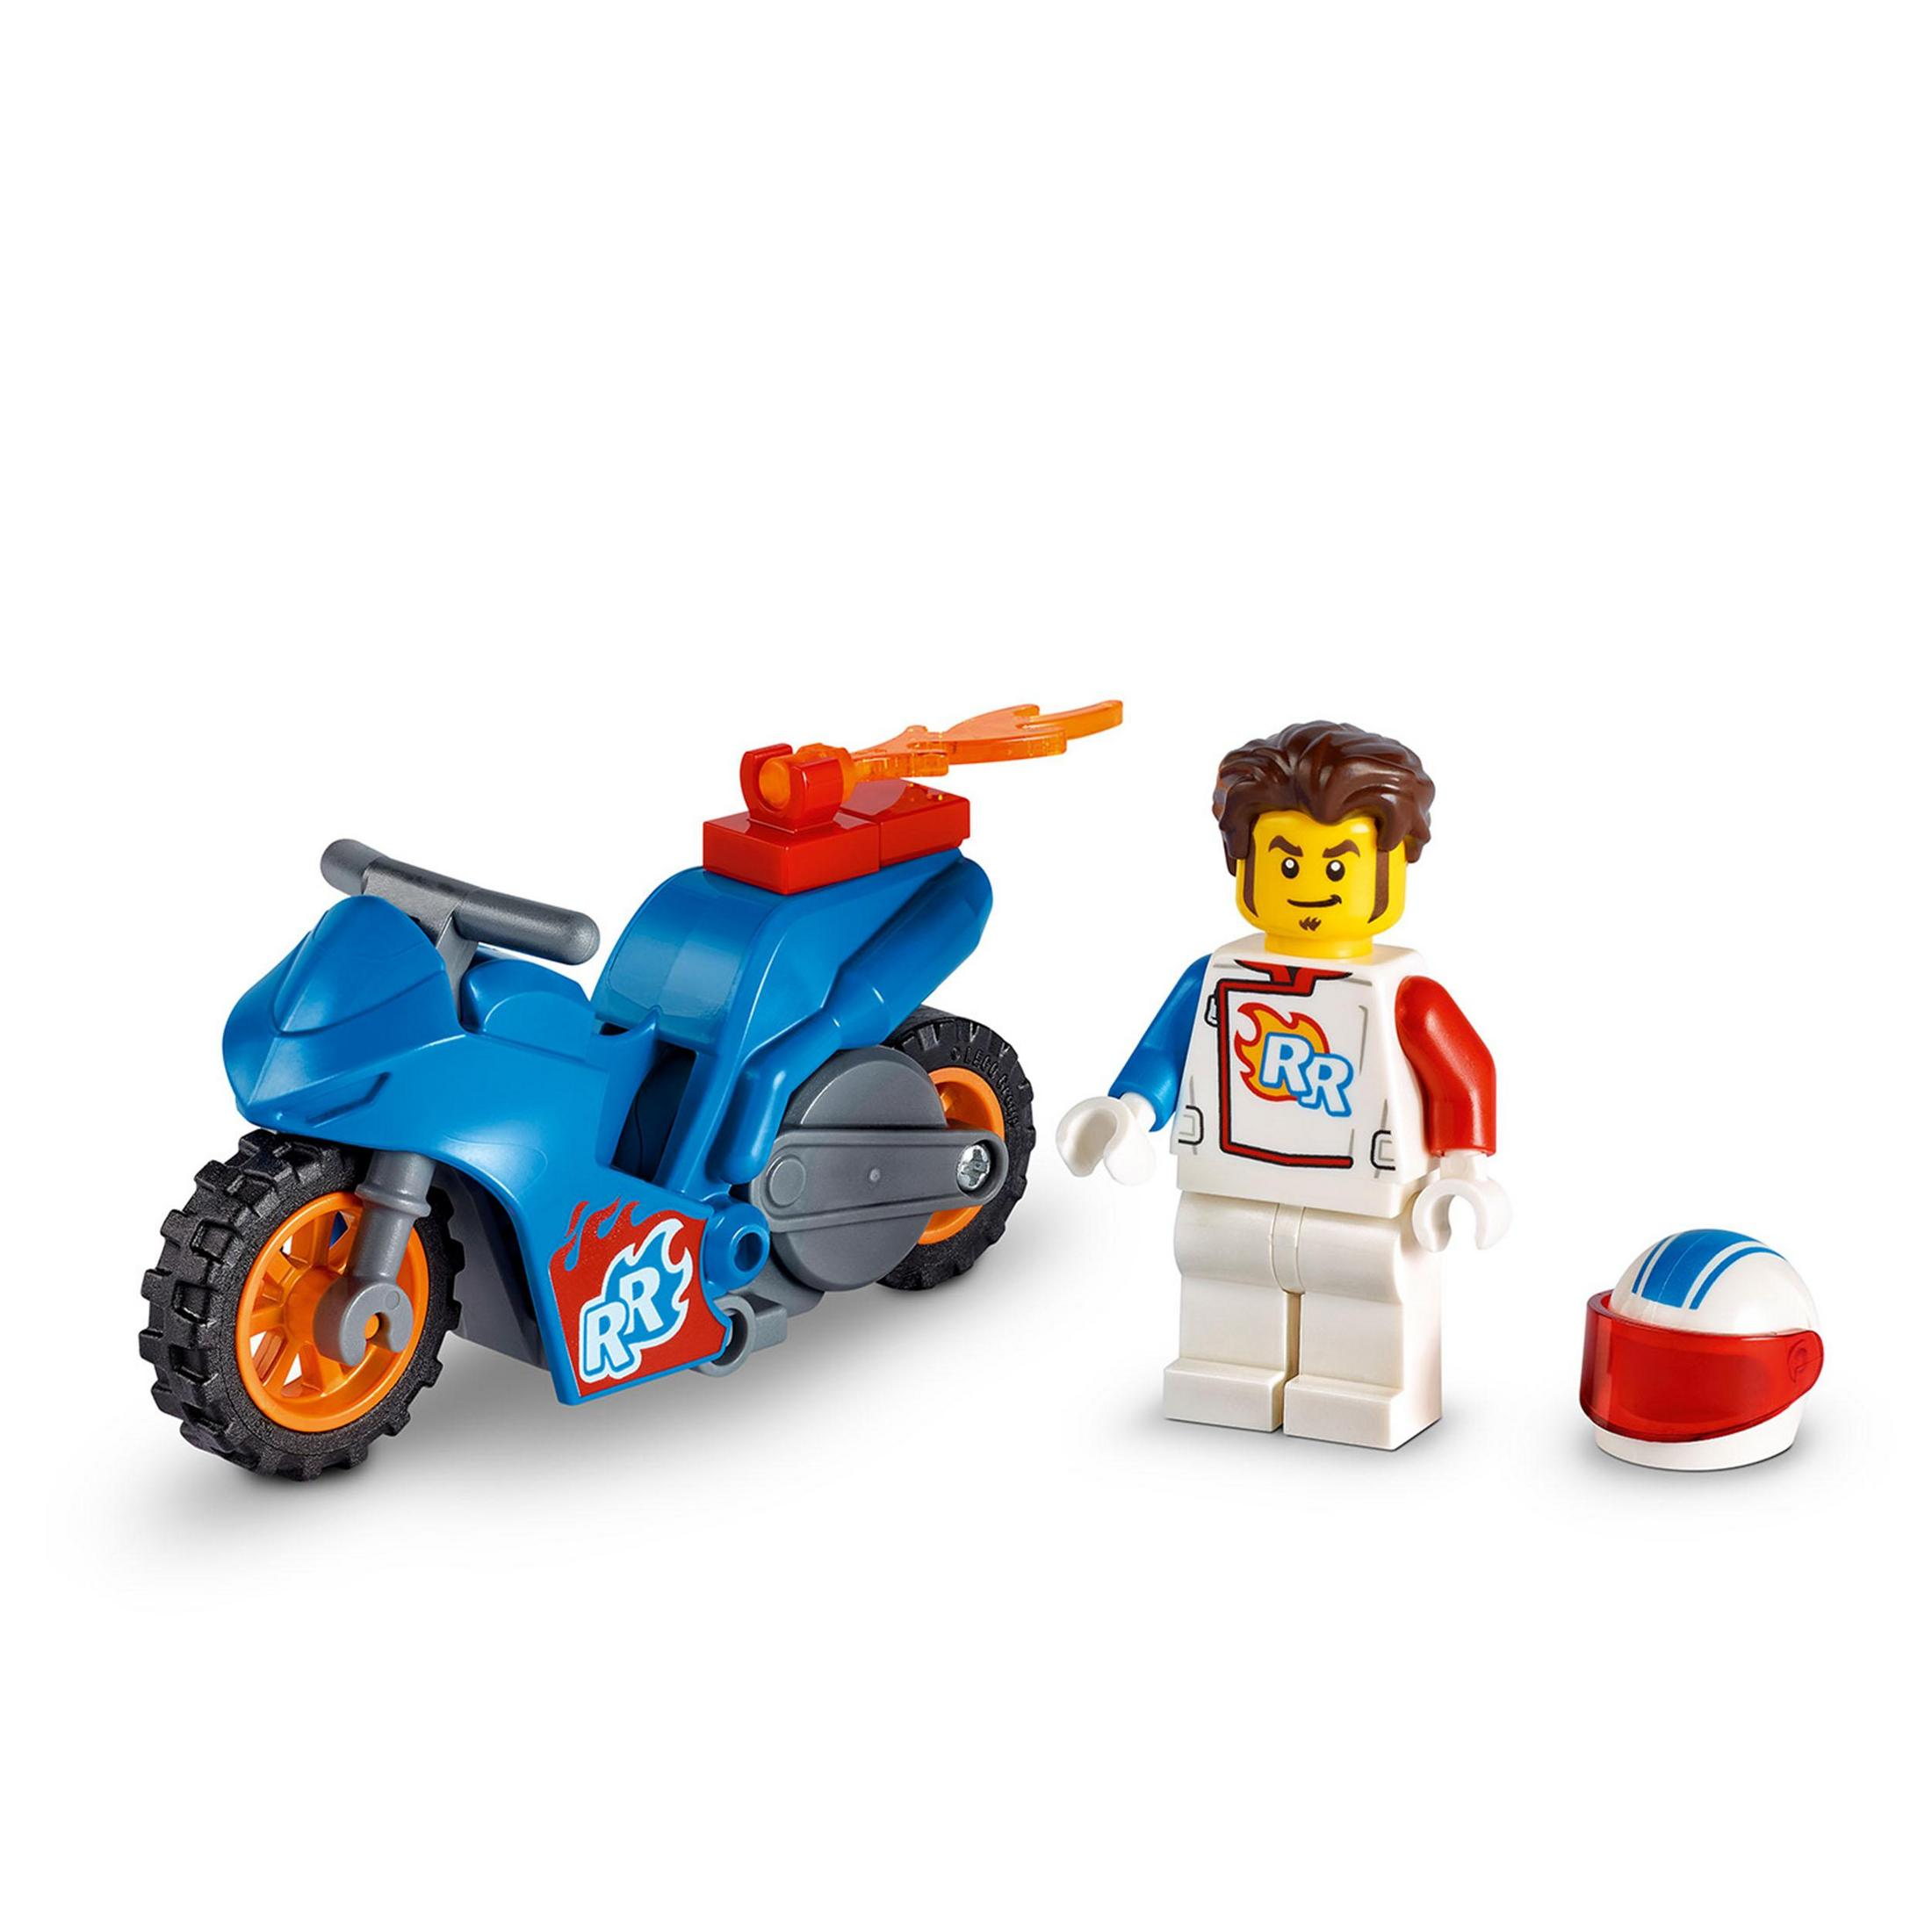 LEGO 60298 RAKETEN-STUNTBIKE Mehrfarbig Bausatz